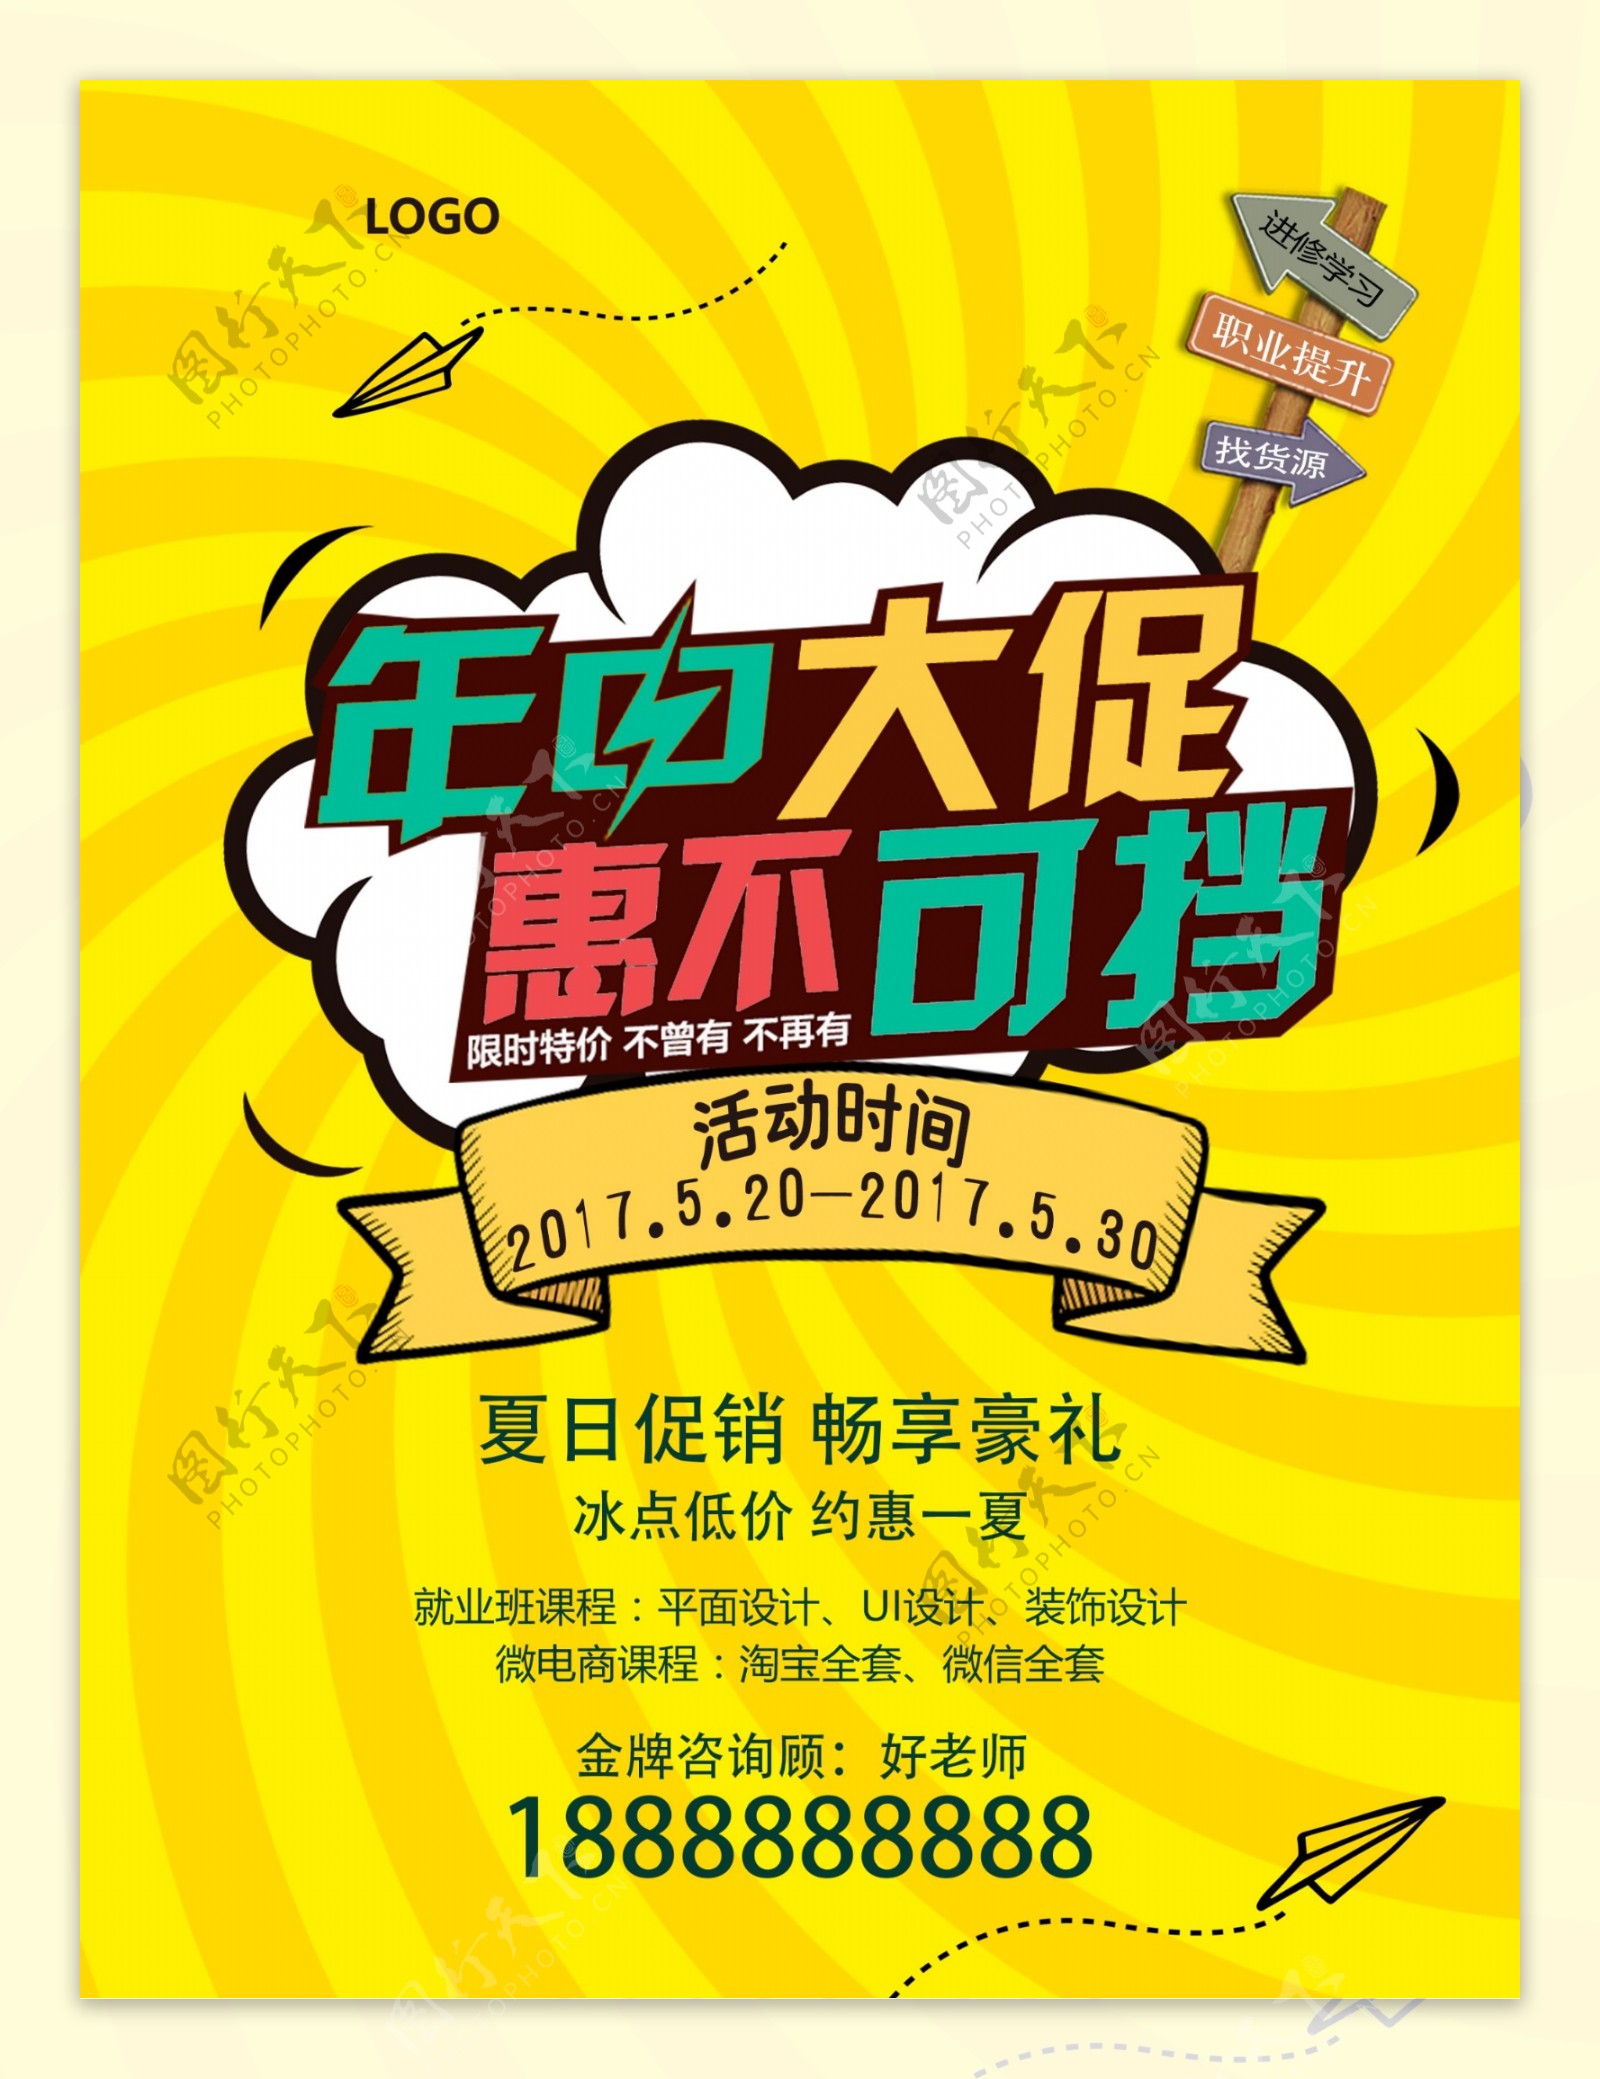 黄颜色背景年中促销惠民海报